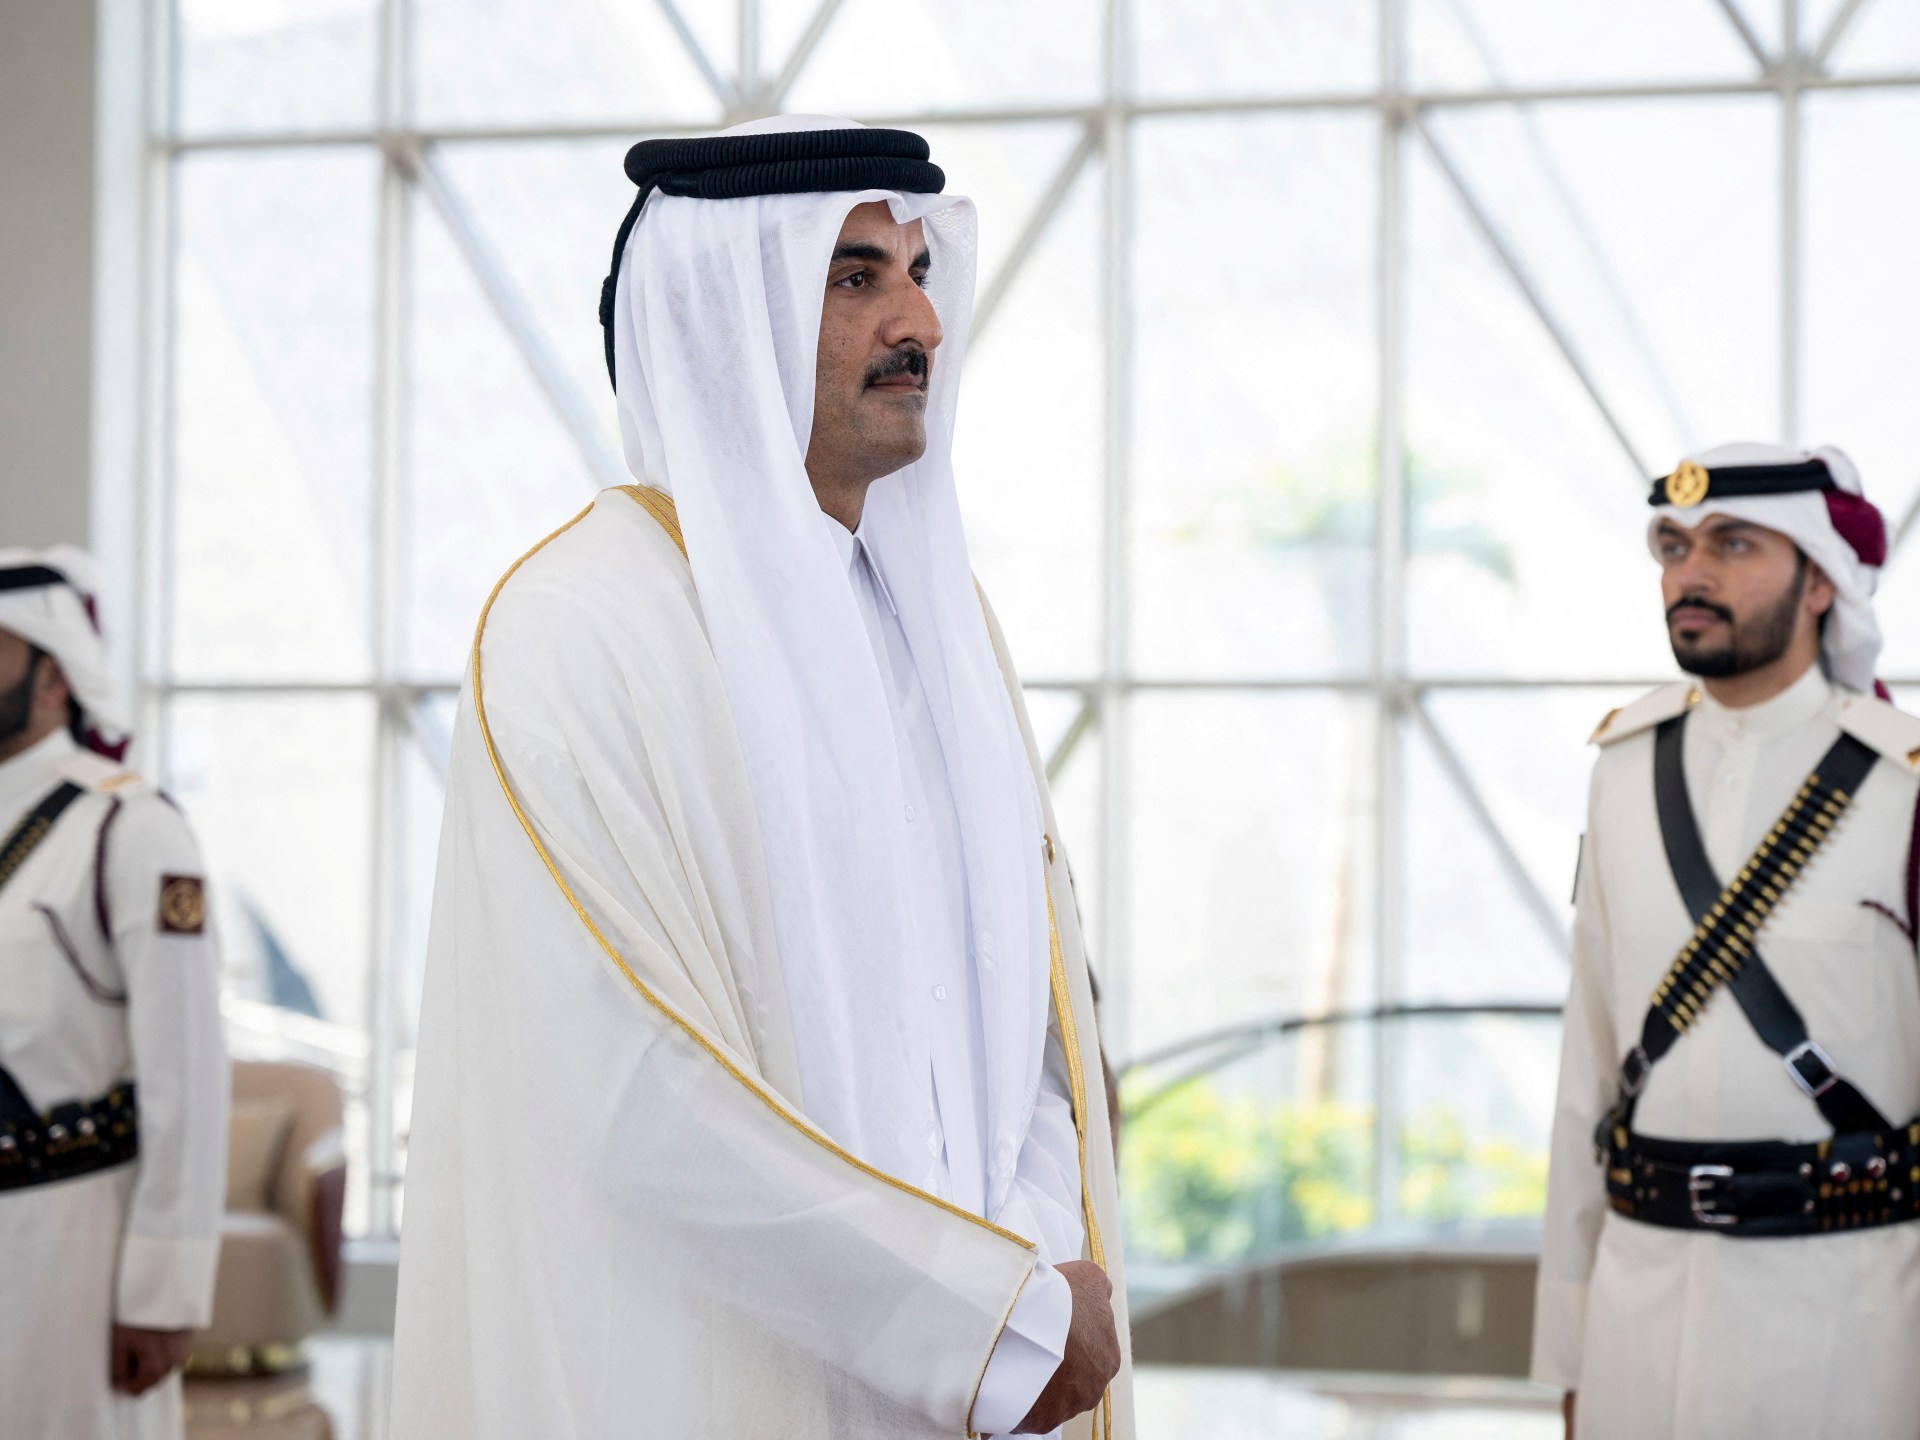 Qatar emir condemns ‘genocide’ in Gaza, urges ceasefire at GCC summit | Israel-Palestine conflict News #Qatar #emir #condemns #genocide #Gaza #urges #ceasefire #GCC #summit #IsraelPalestine #conflict #News